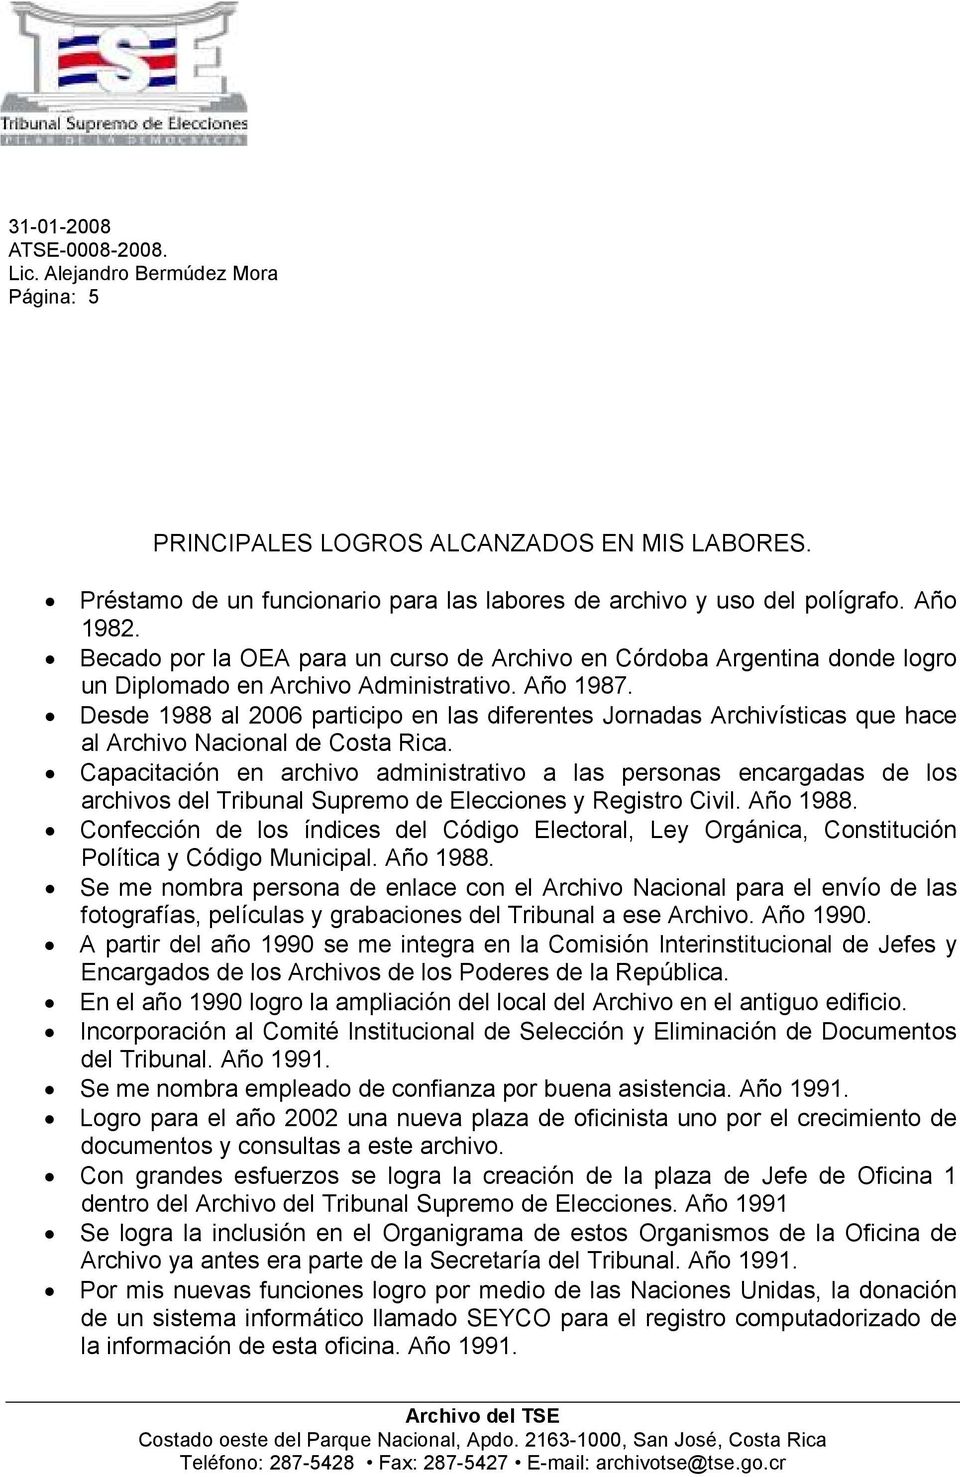 Desde 1988 al 2006 participo en las diferentes Jornadas Archivísticas que hace al Archivo Nacional de Costa Rica.